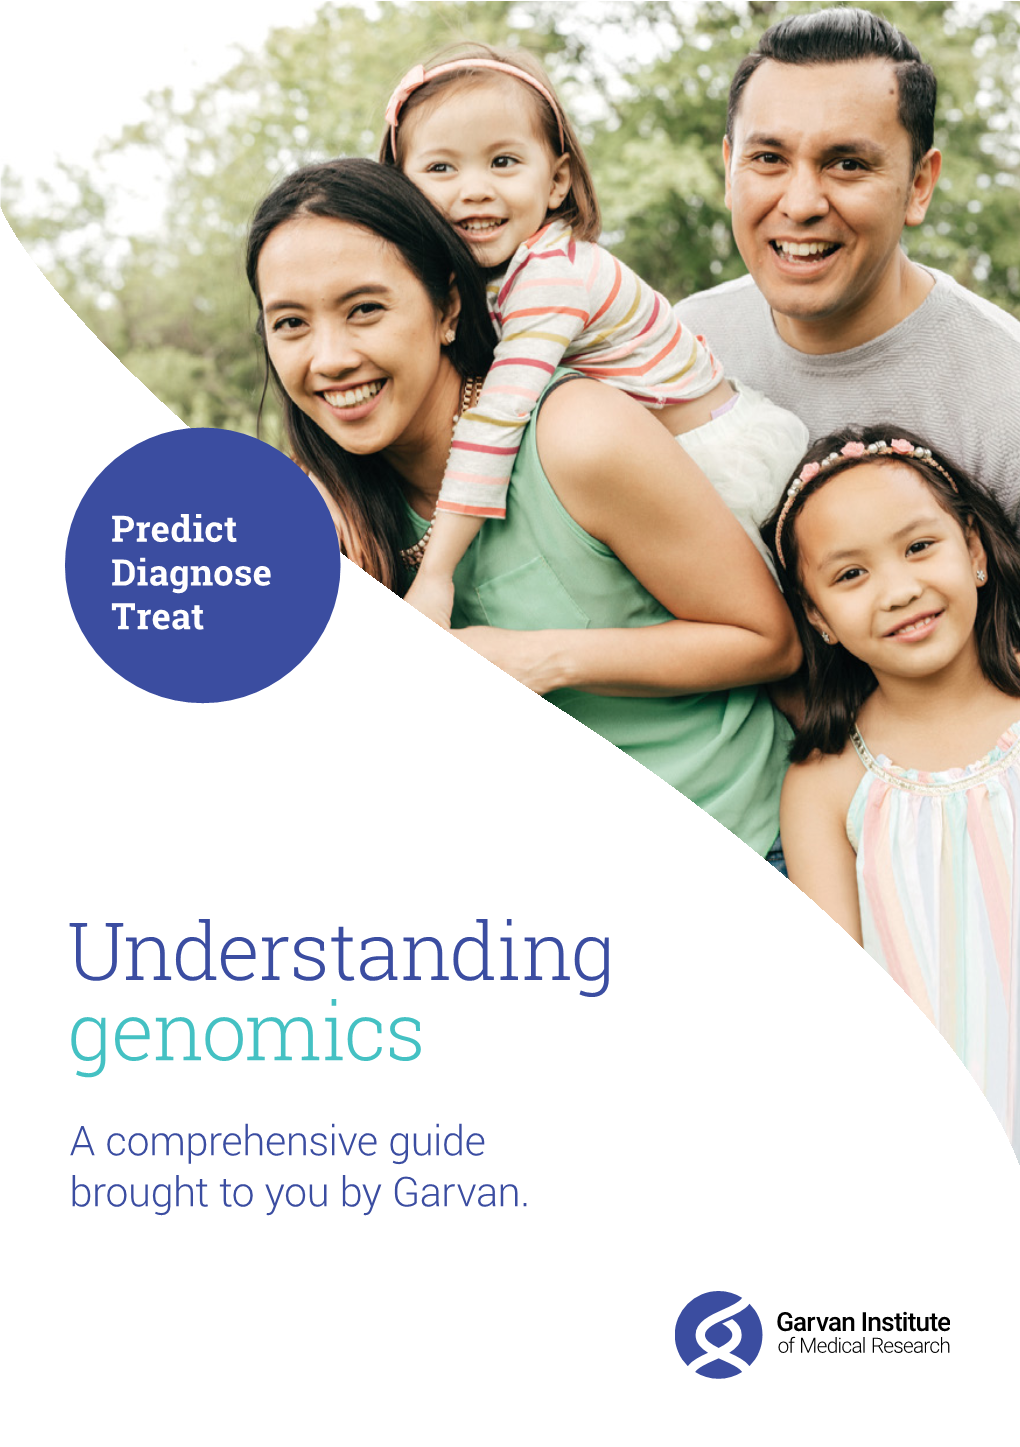 Understanding Genomics